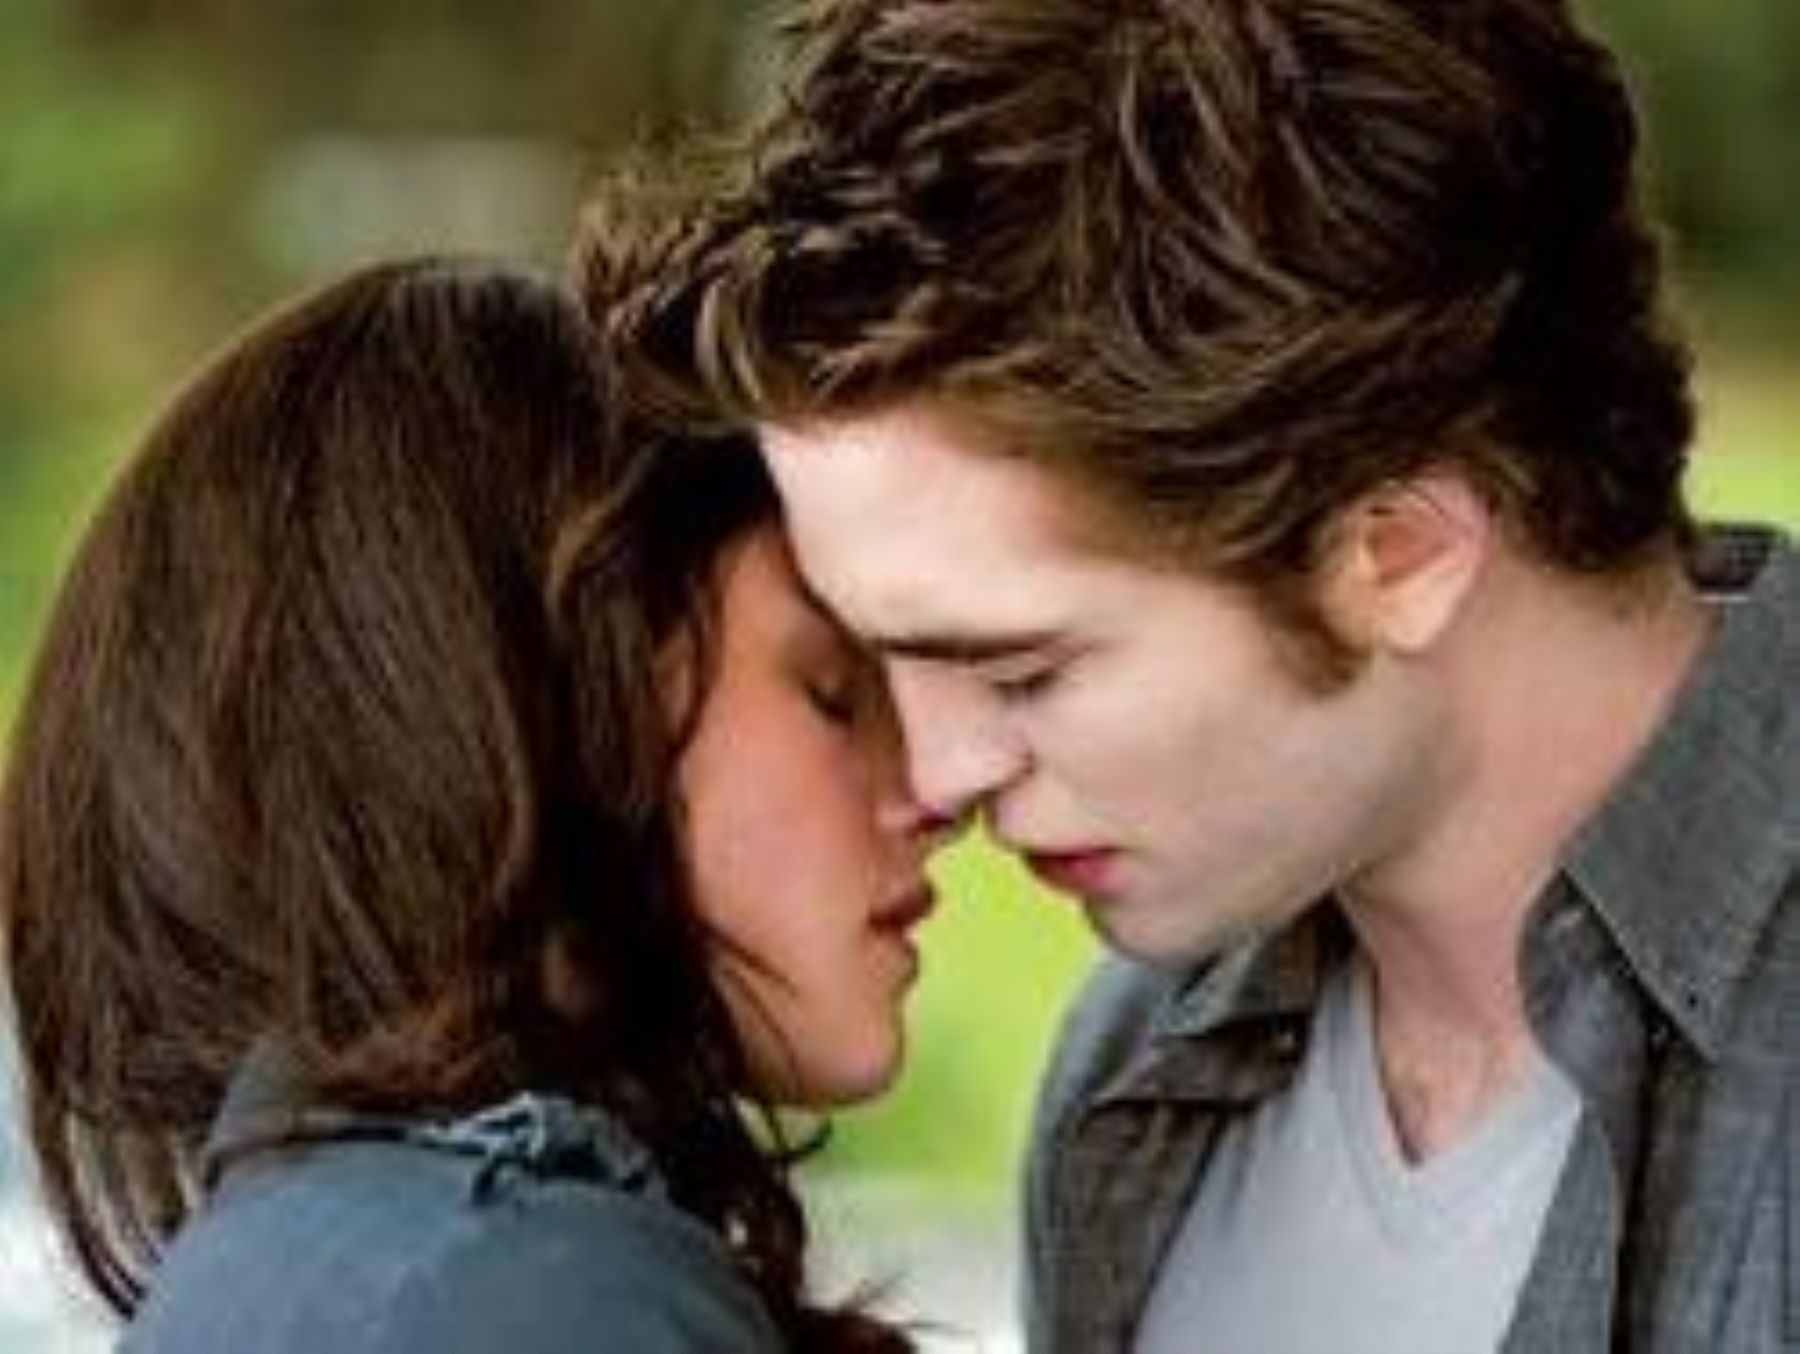 El siempre esperado beso entre los dos protagonistas: Bella y el vampiro Edward.